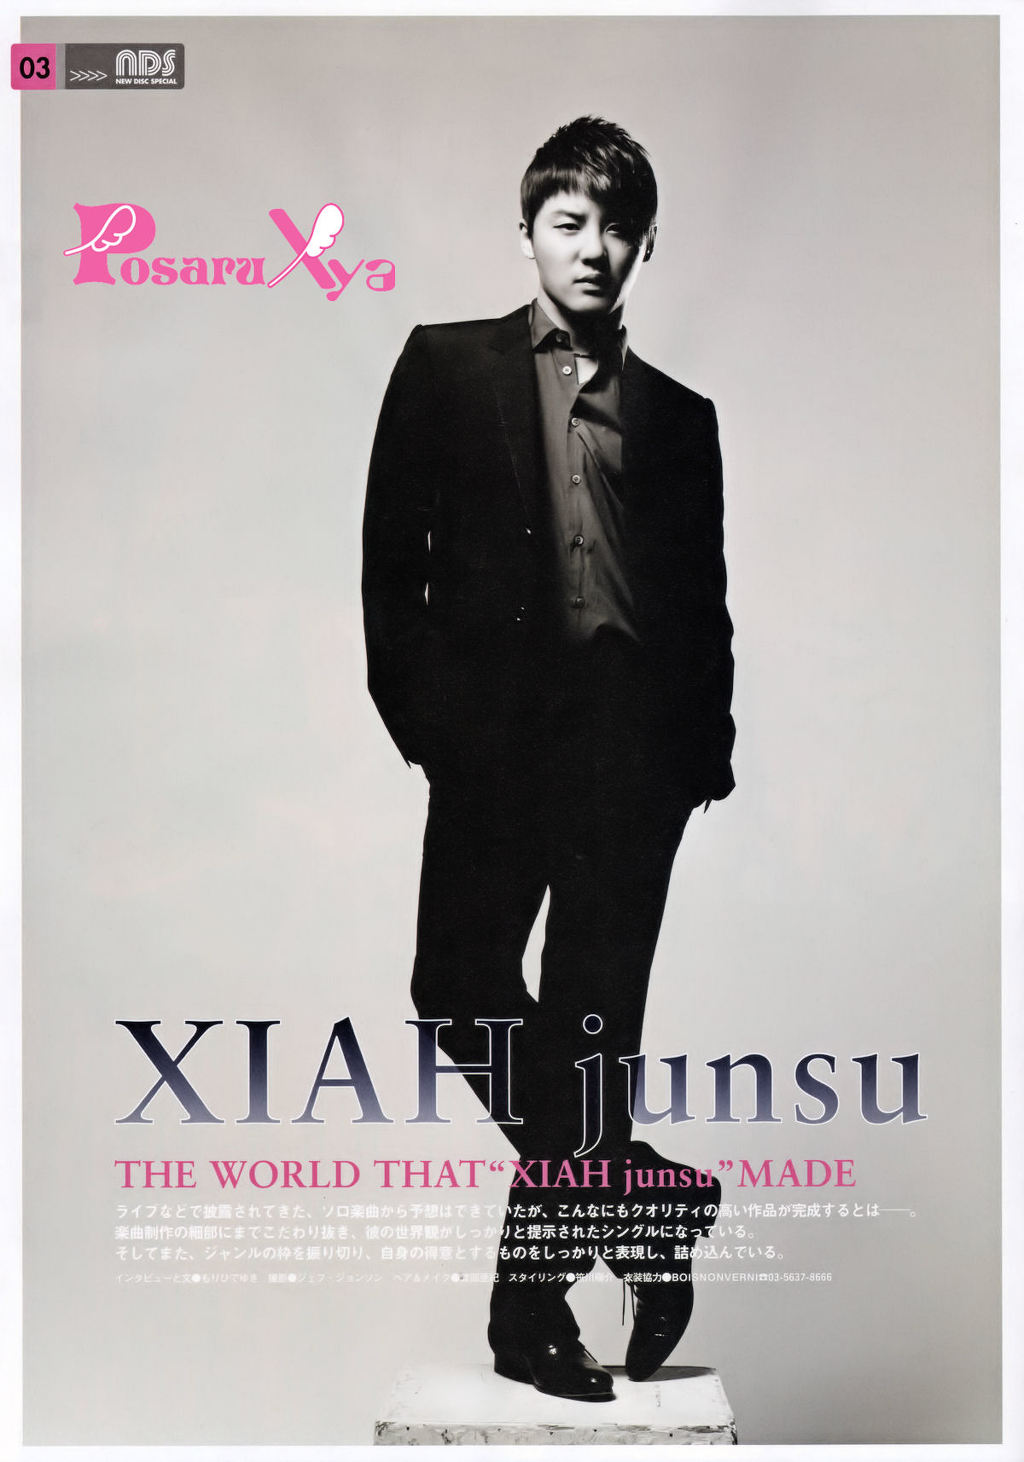 The World that XIAH junsu Made